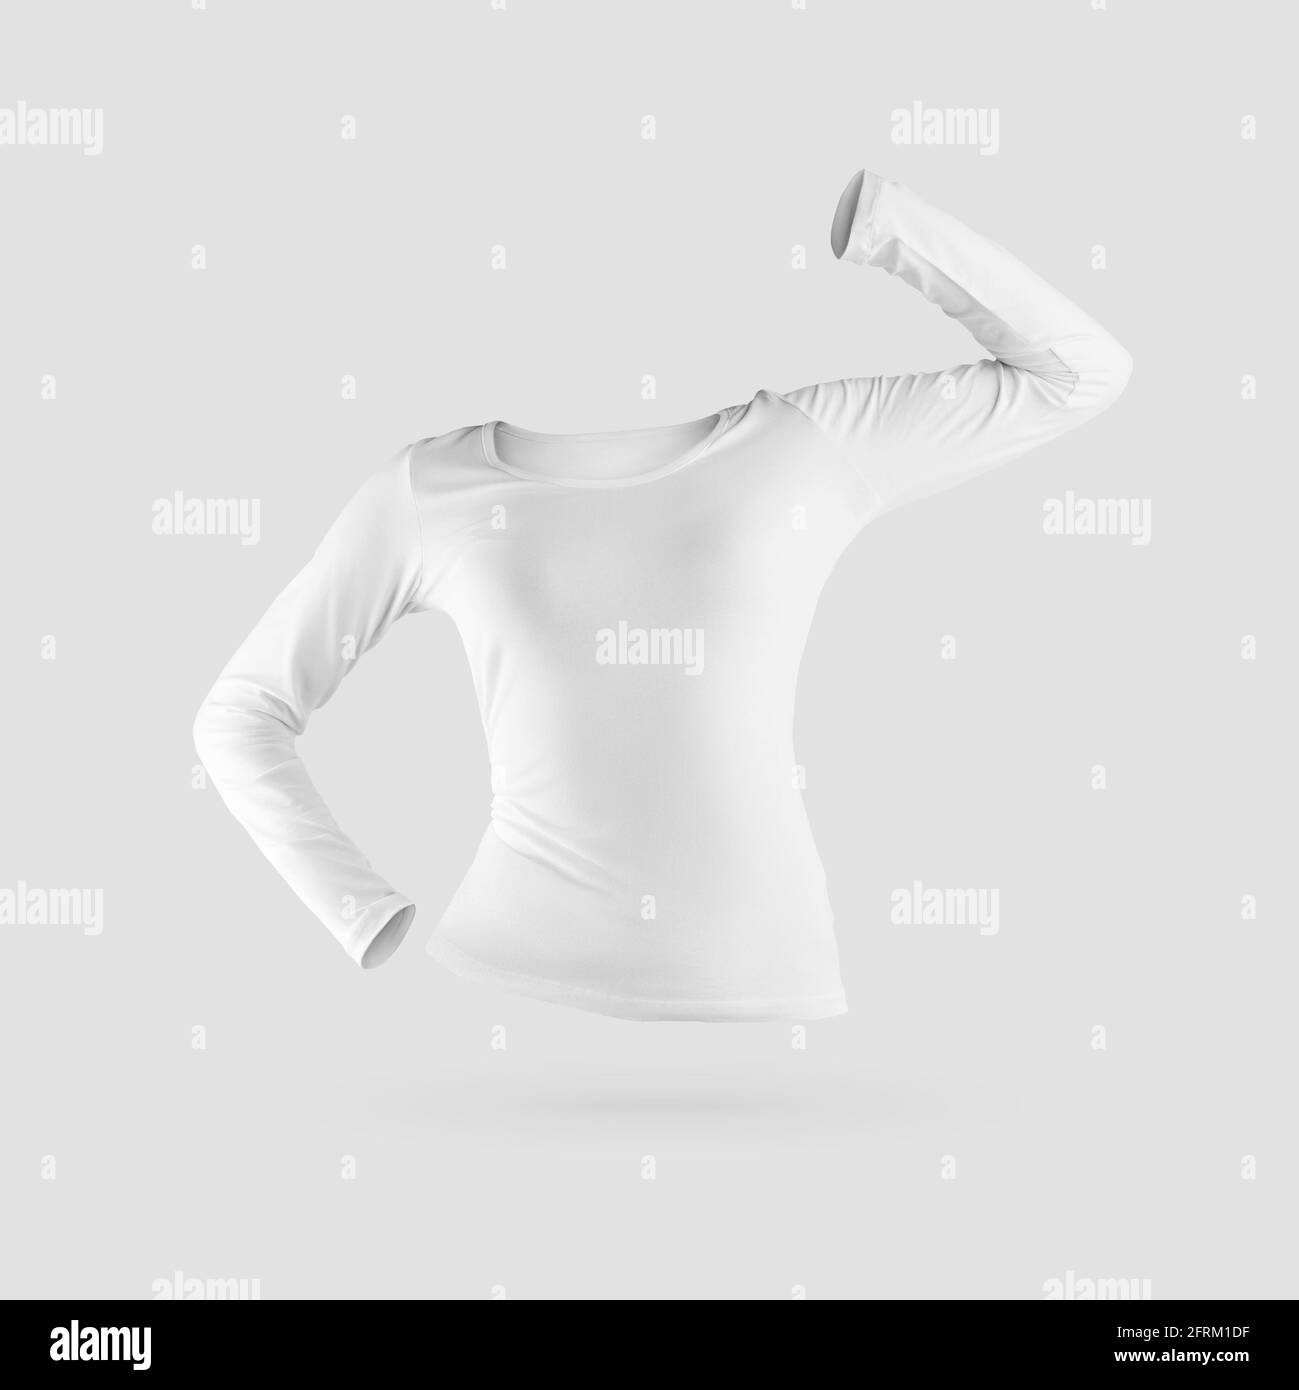 Nachbau eines modischen Sweatshirts 3D-Rendering, eng anliegende weiße Kleidung für die Präsentation von Design, Druck, Muster. Stylische Damenbekleidung t Stockfoto